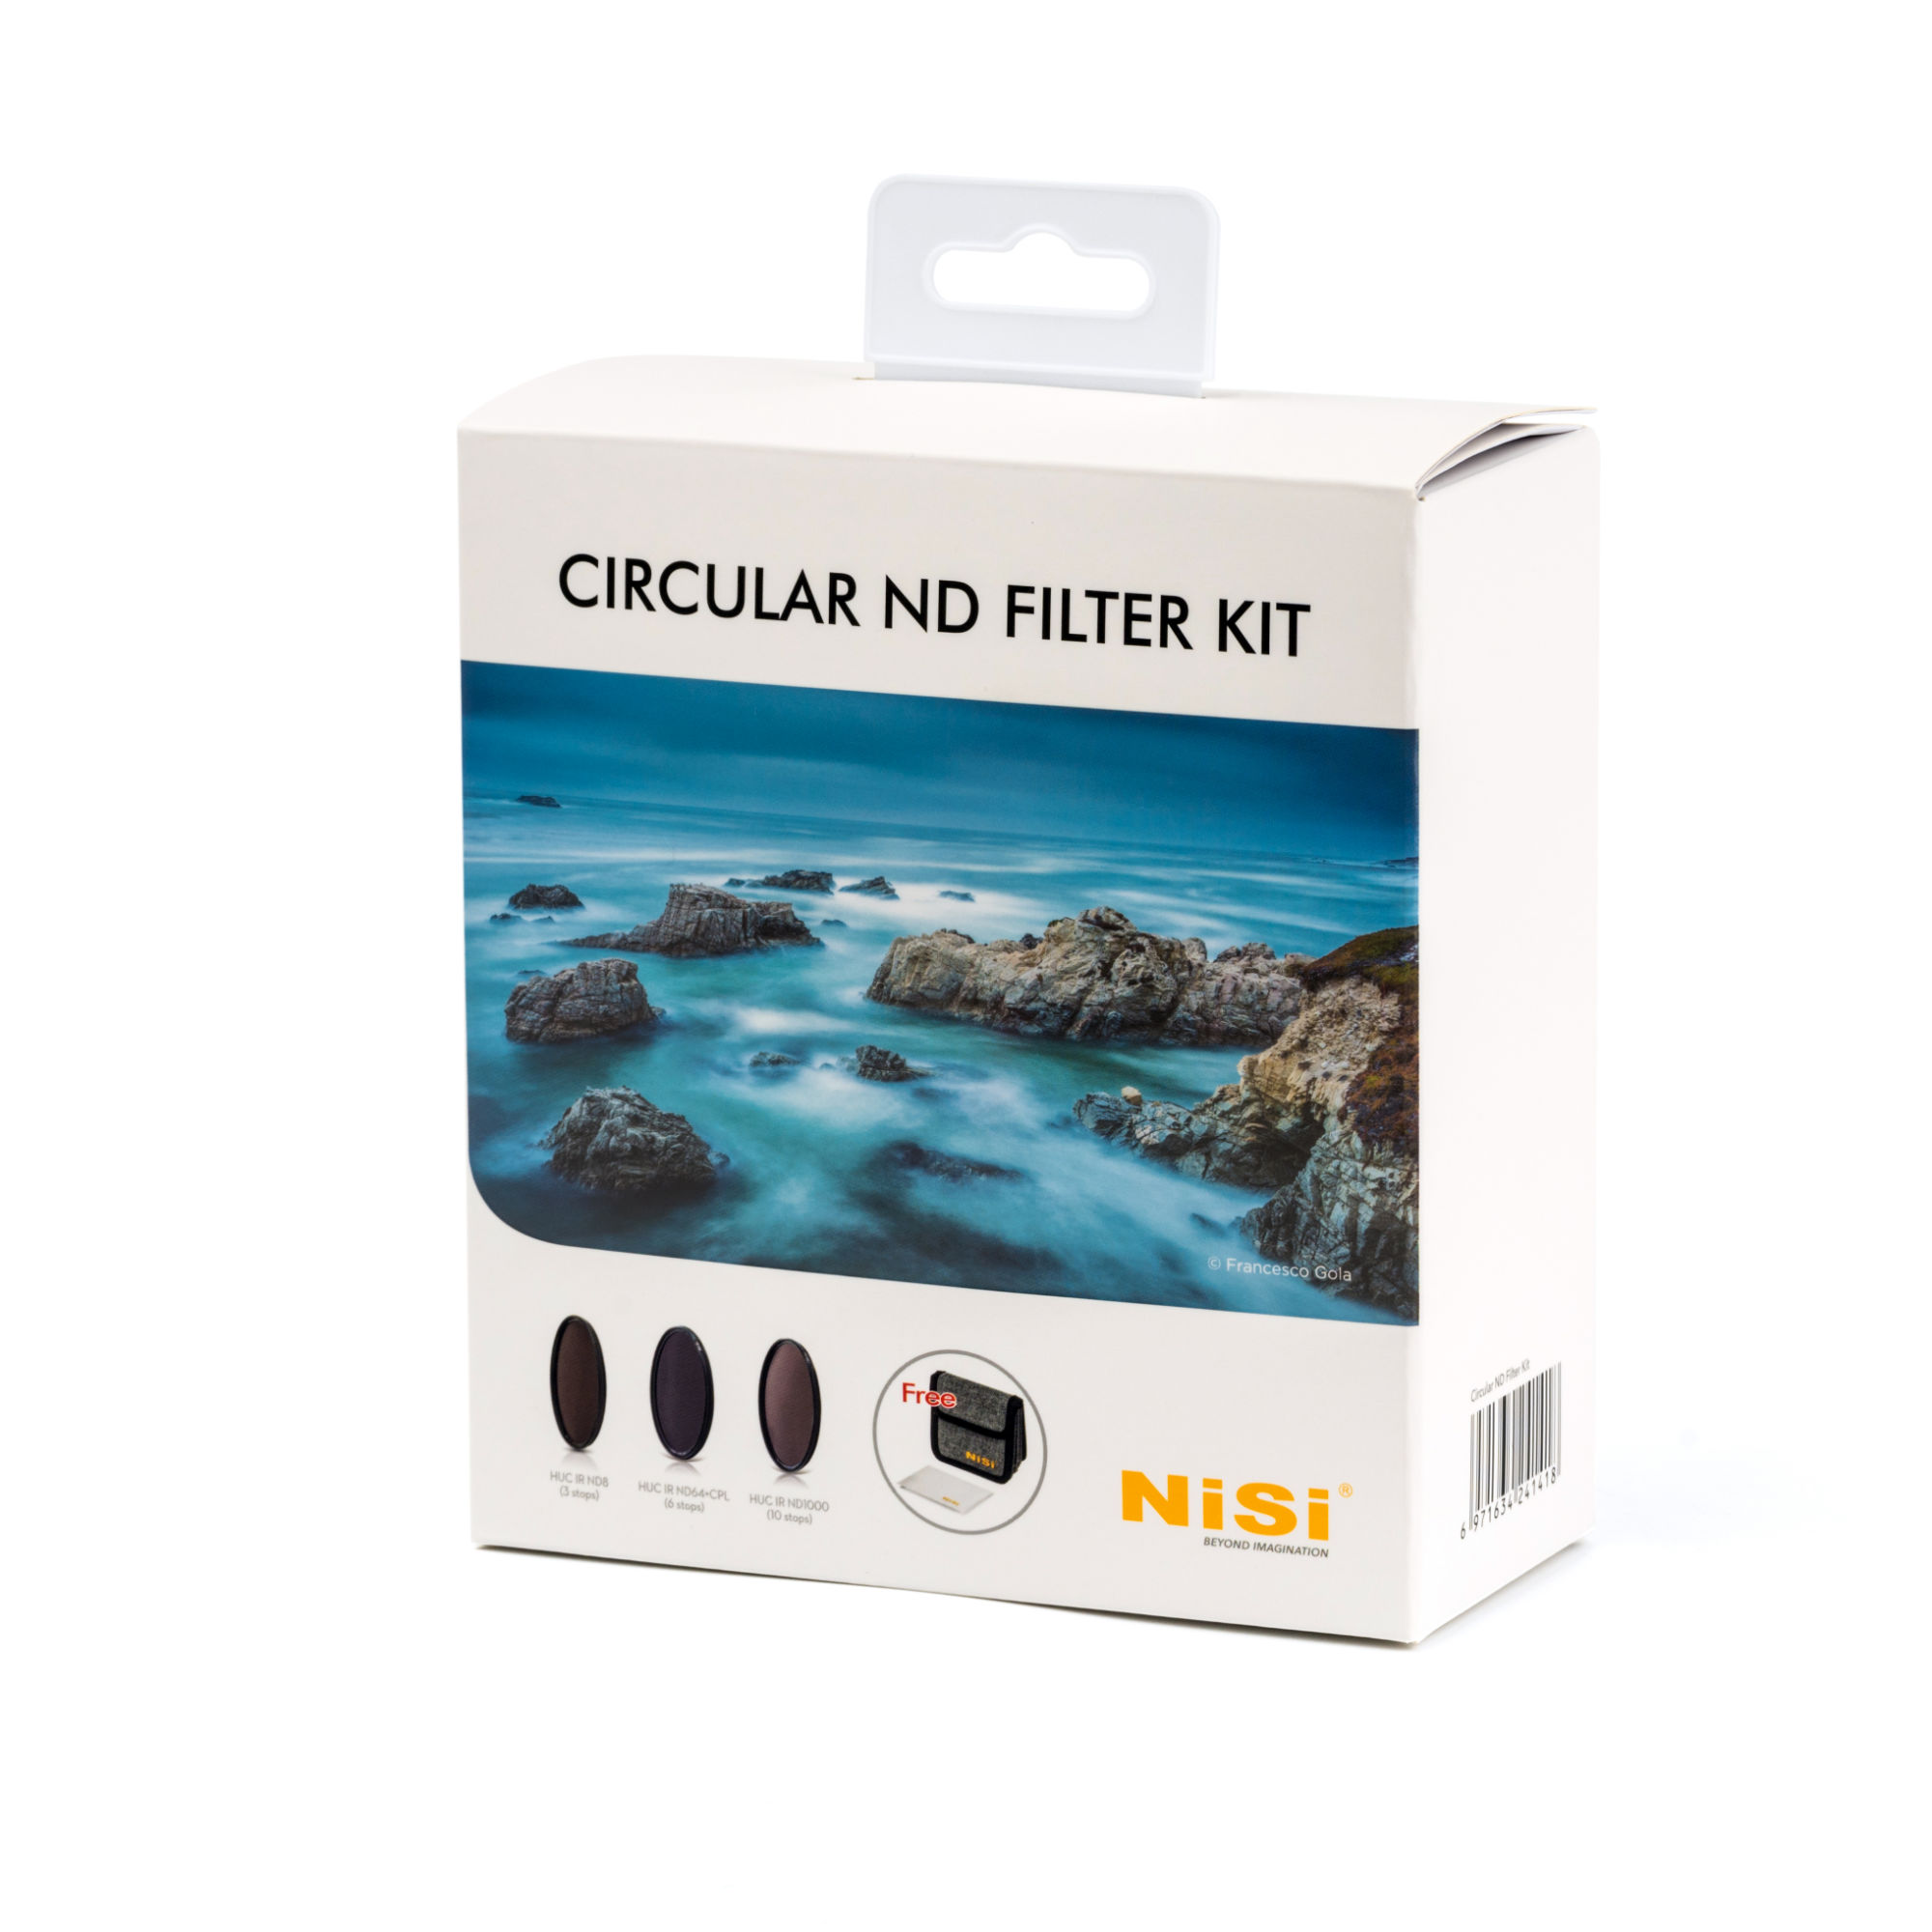 NiSi 82mm Circular ND Filter Kit | NiSi Optics USA